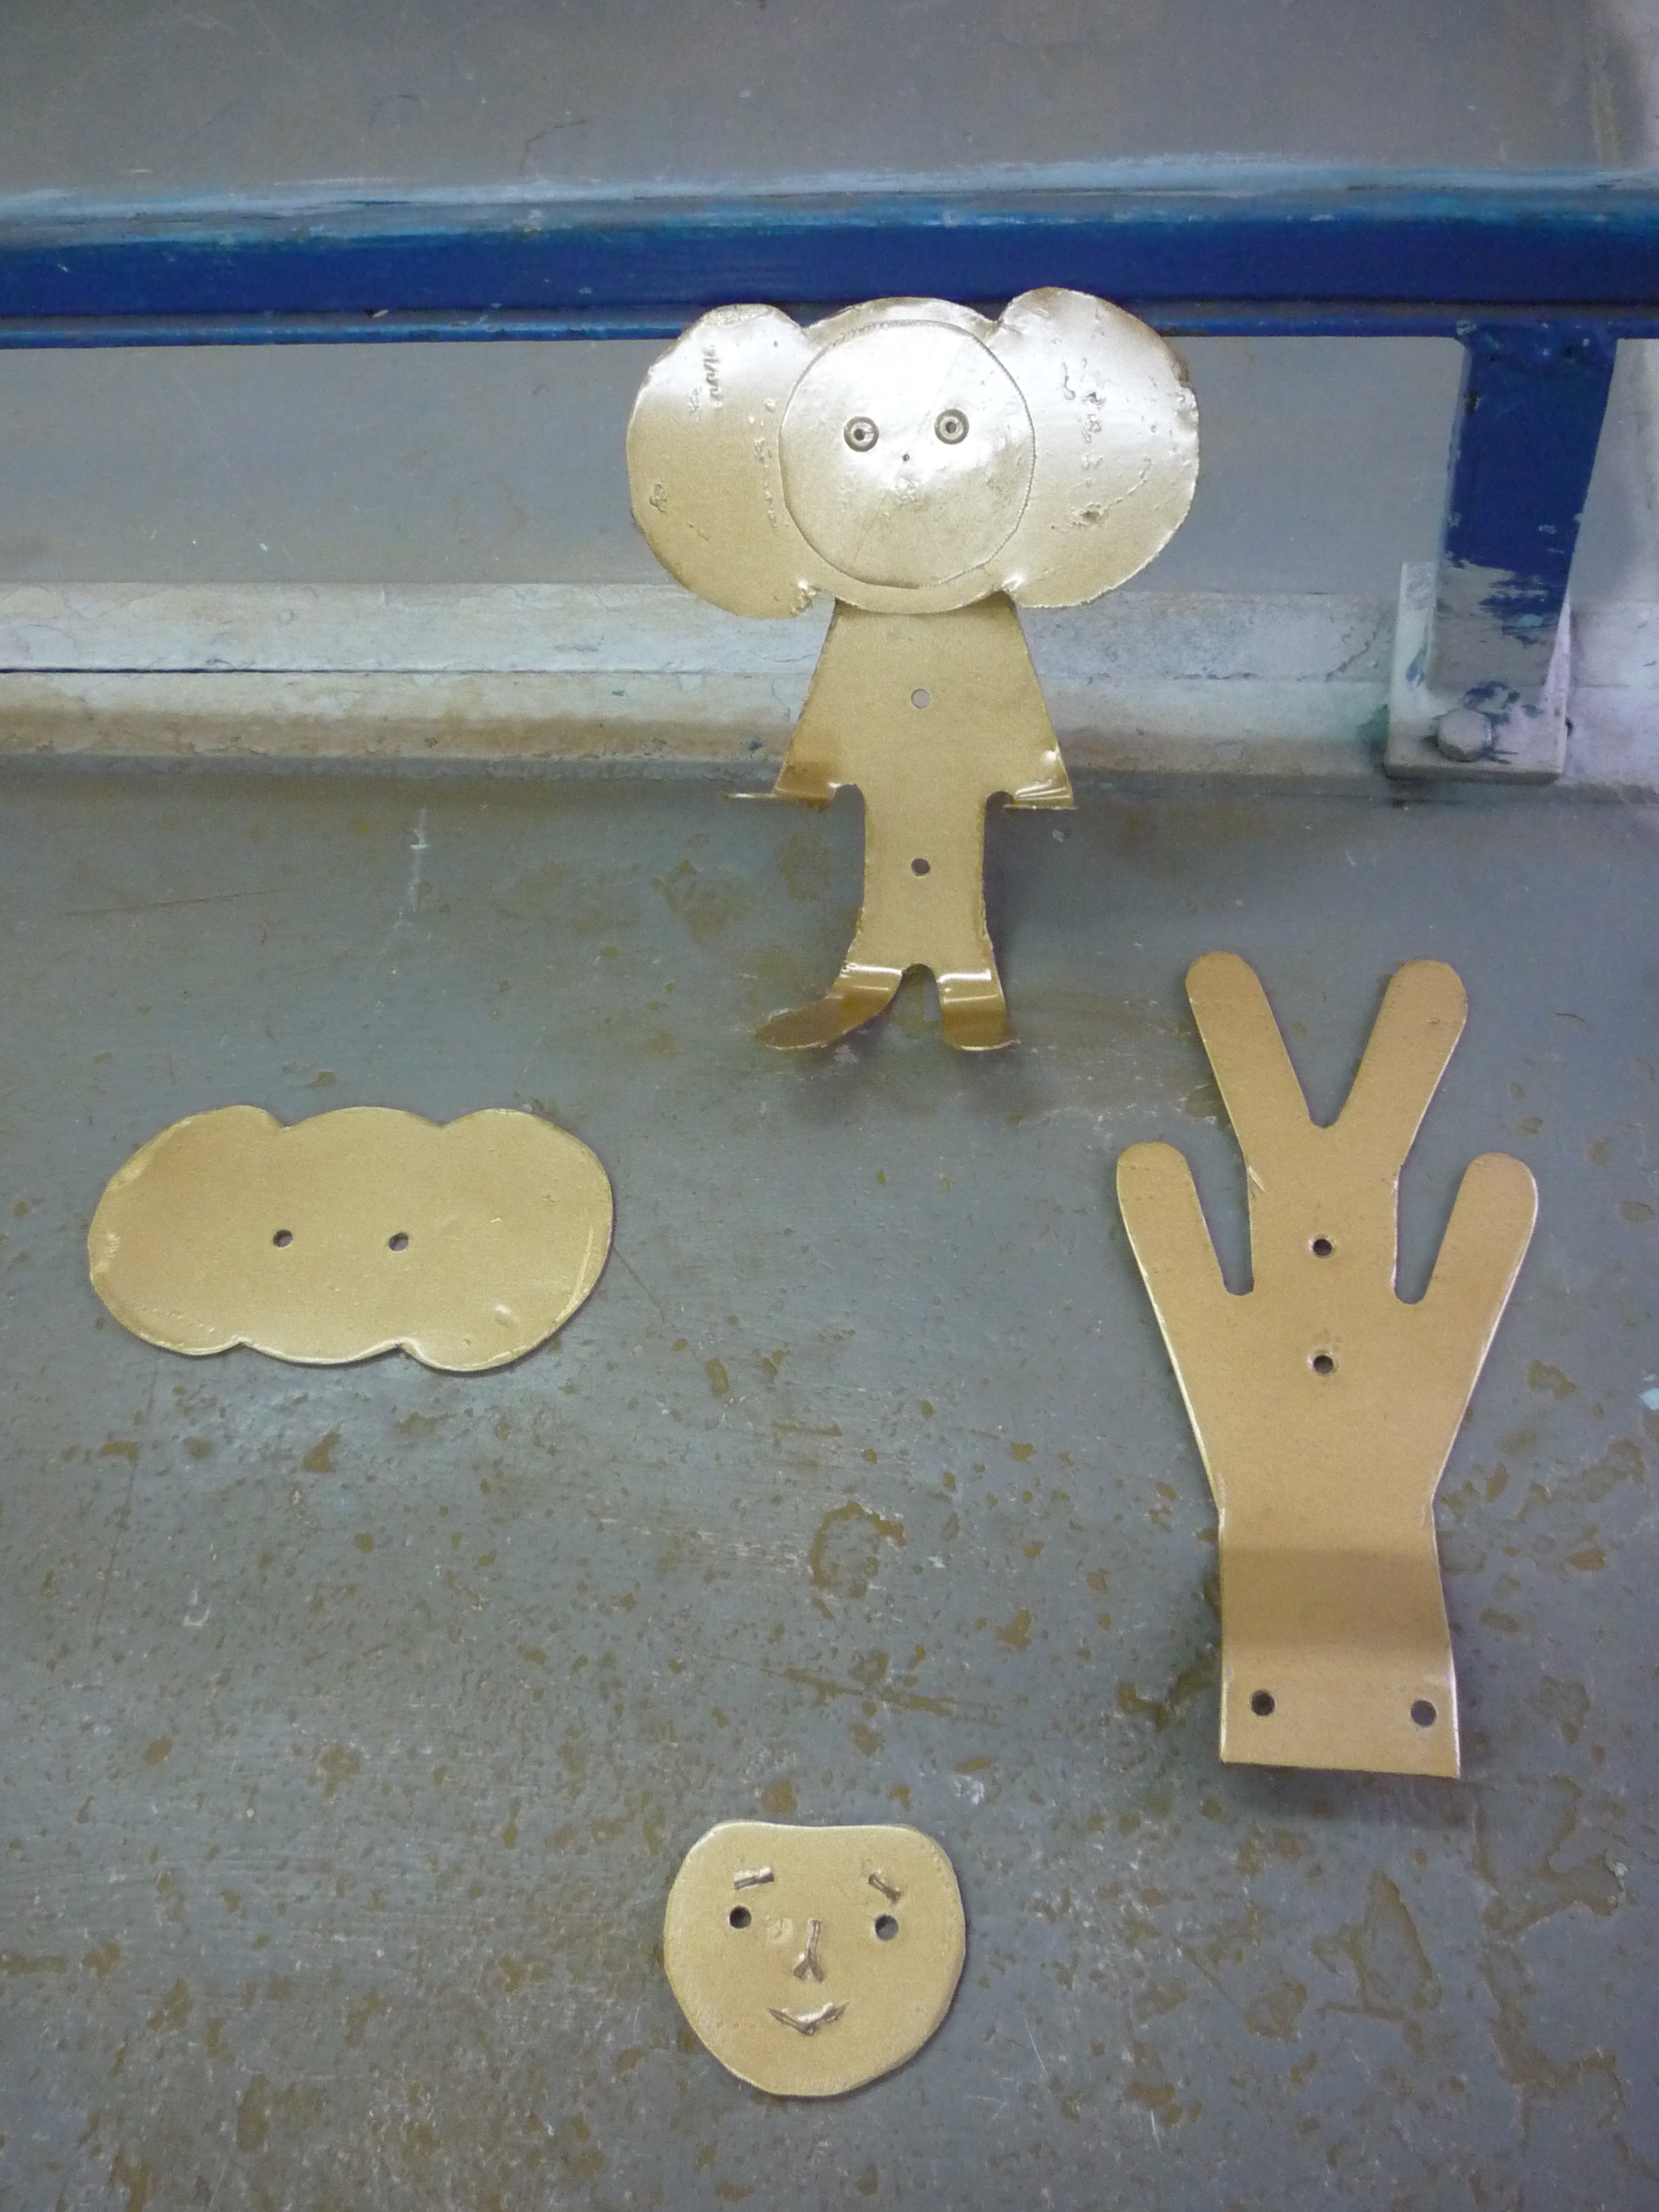 Творческая работа учащихся 7 класса Изготовление металлической вешалки - игрушки